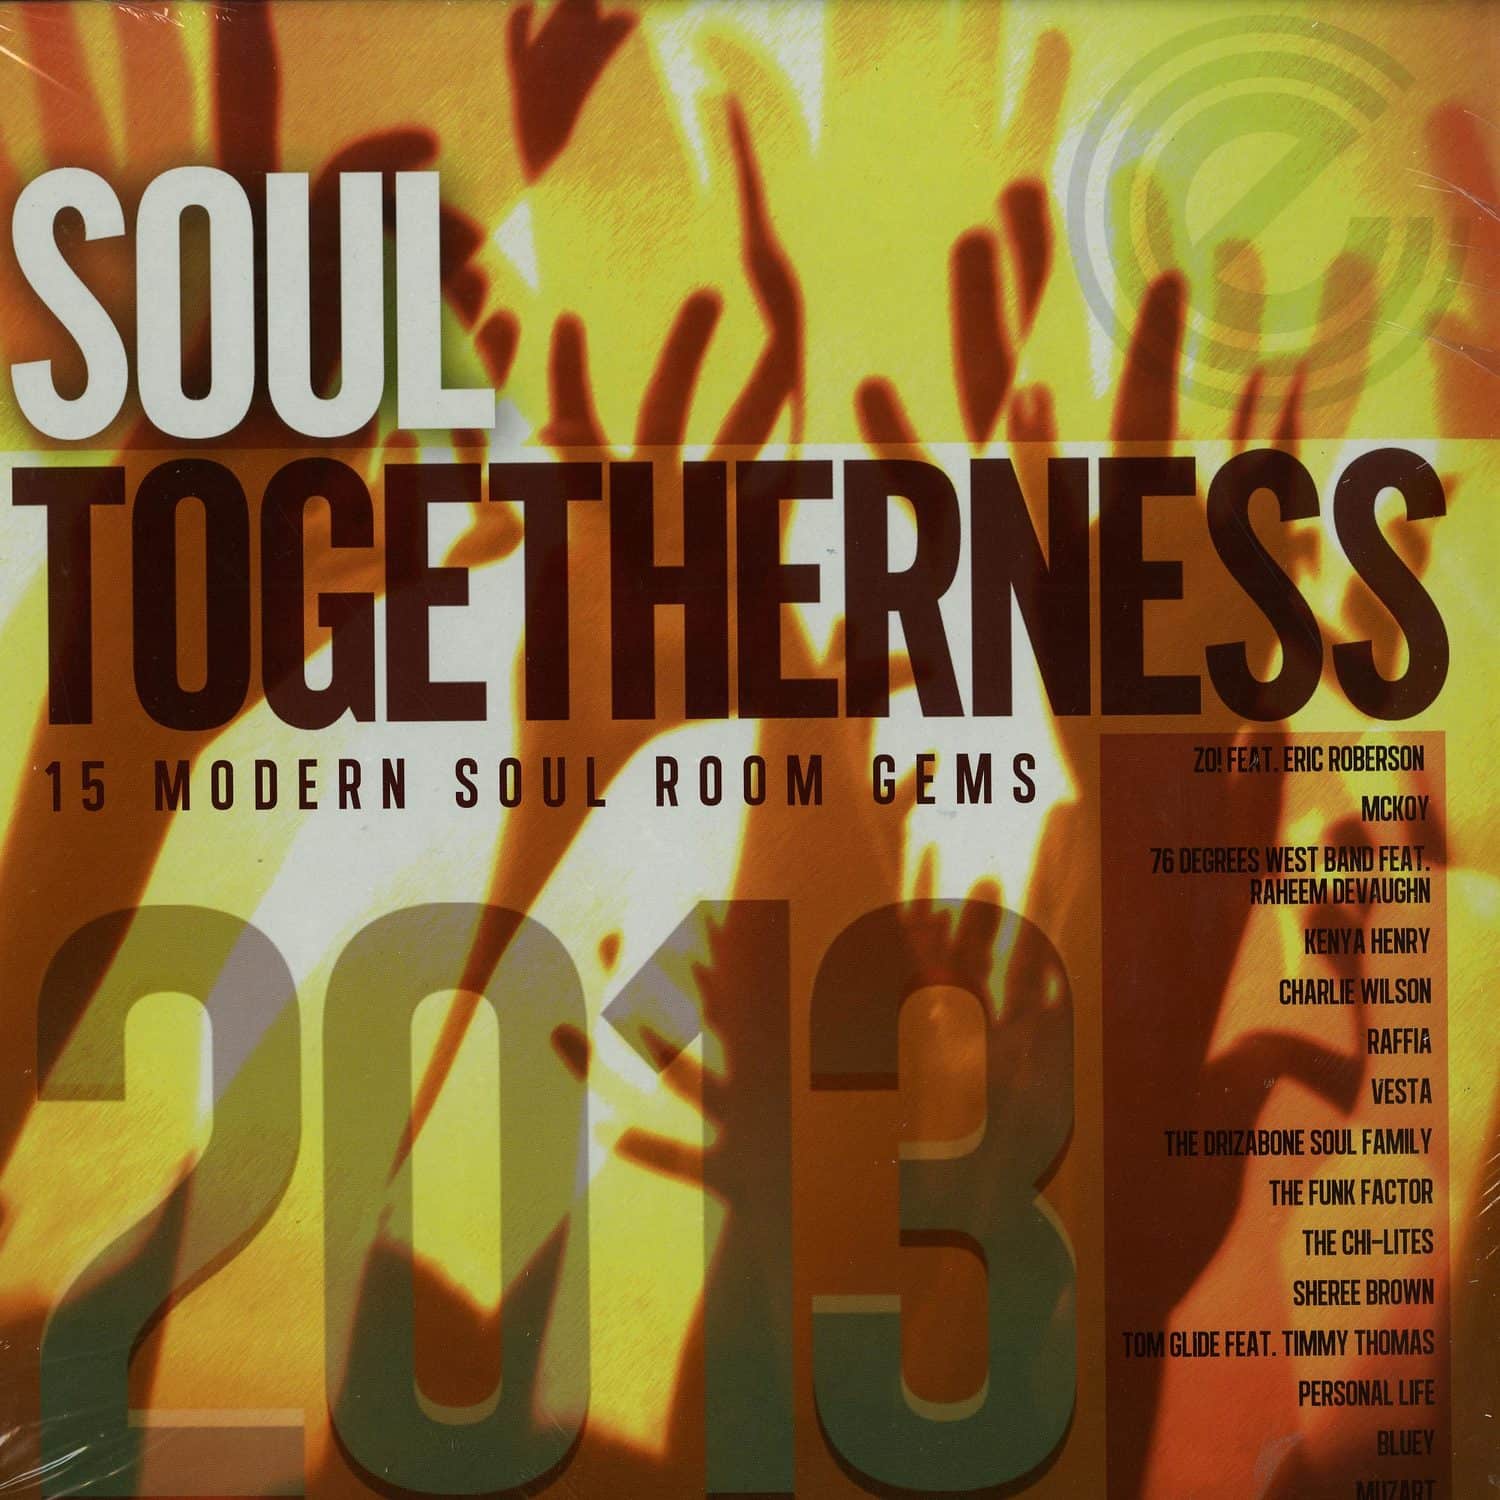 soul togetherness 2002 rar